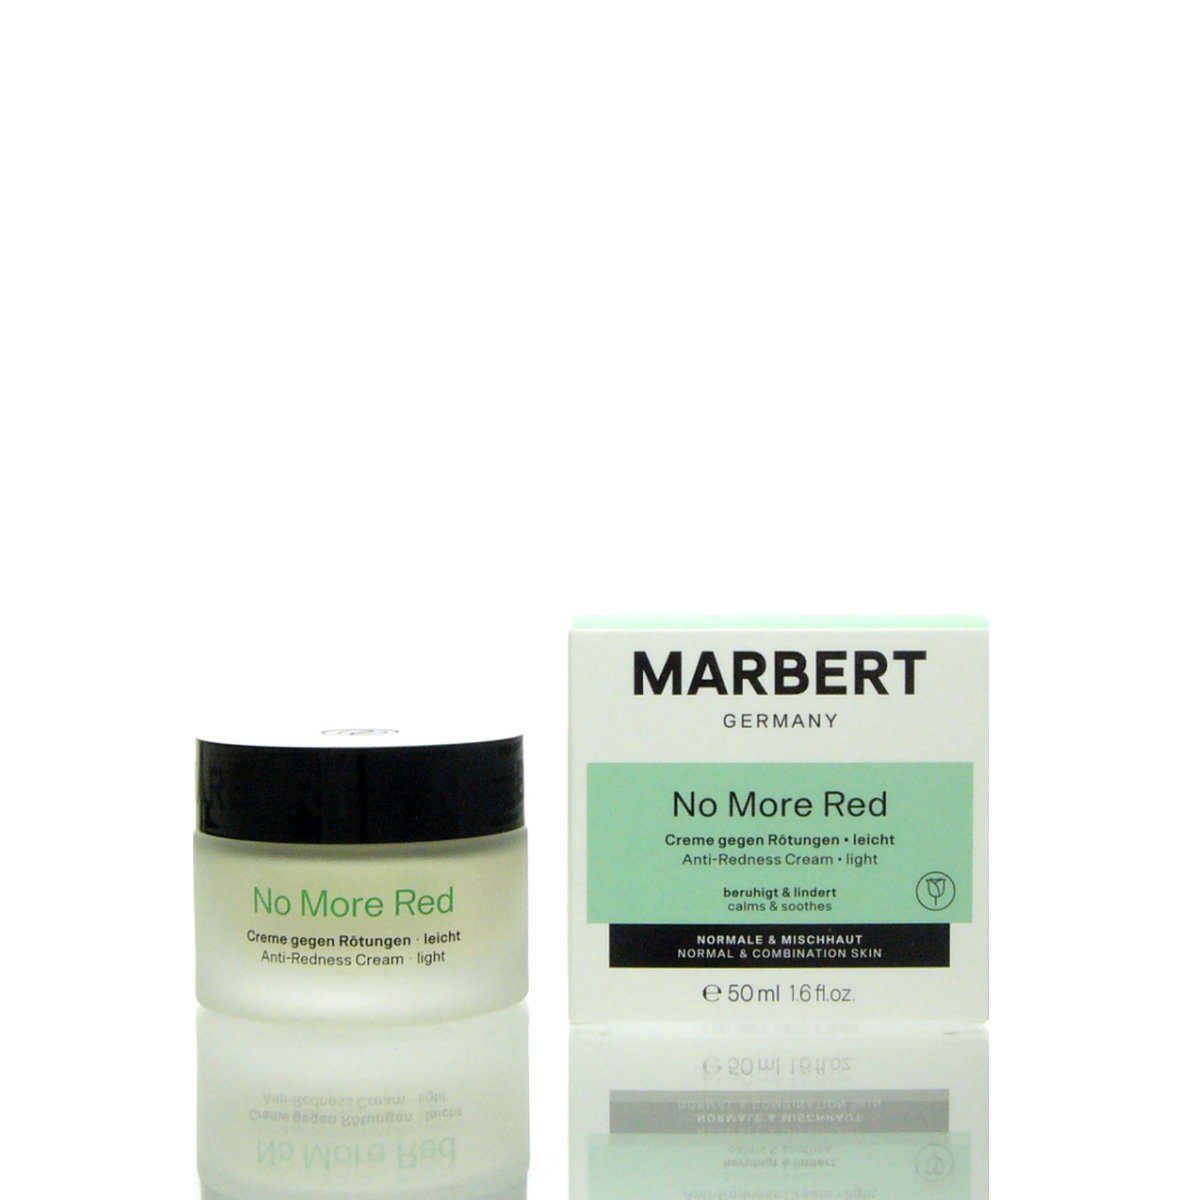 Marbert 50 Cream Comfort Light Haut Gesichtscreme gerötete Marbert für Gesichtspflege ml, NoMoreRed Beruhigende